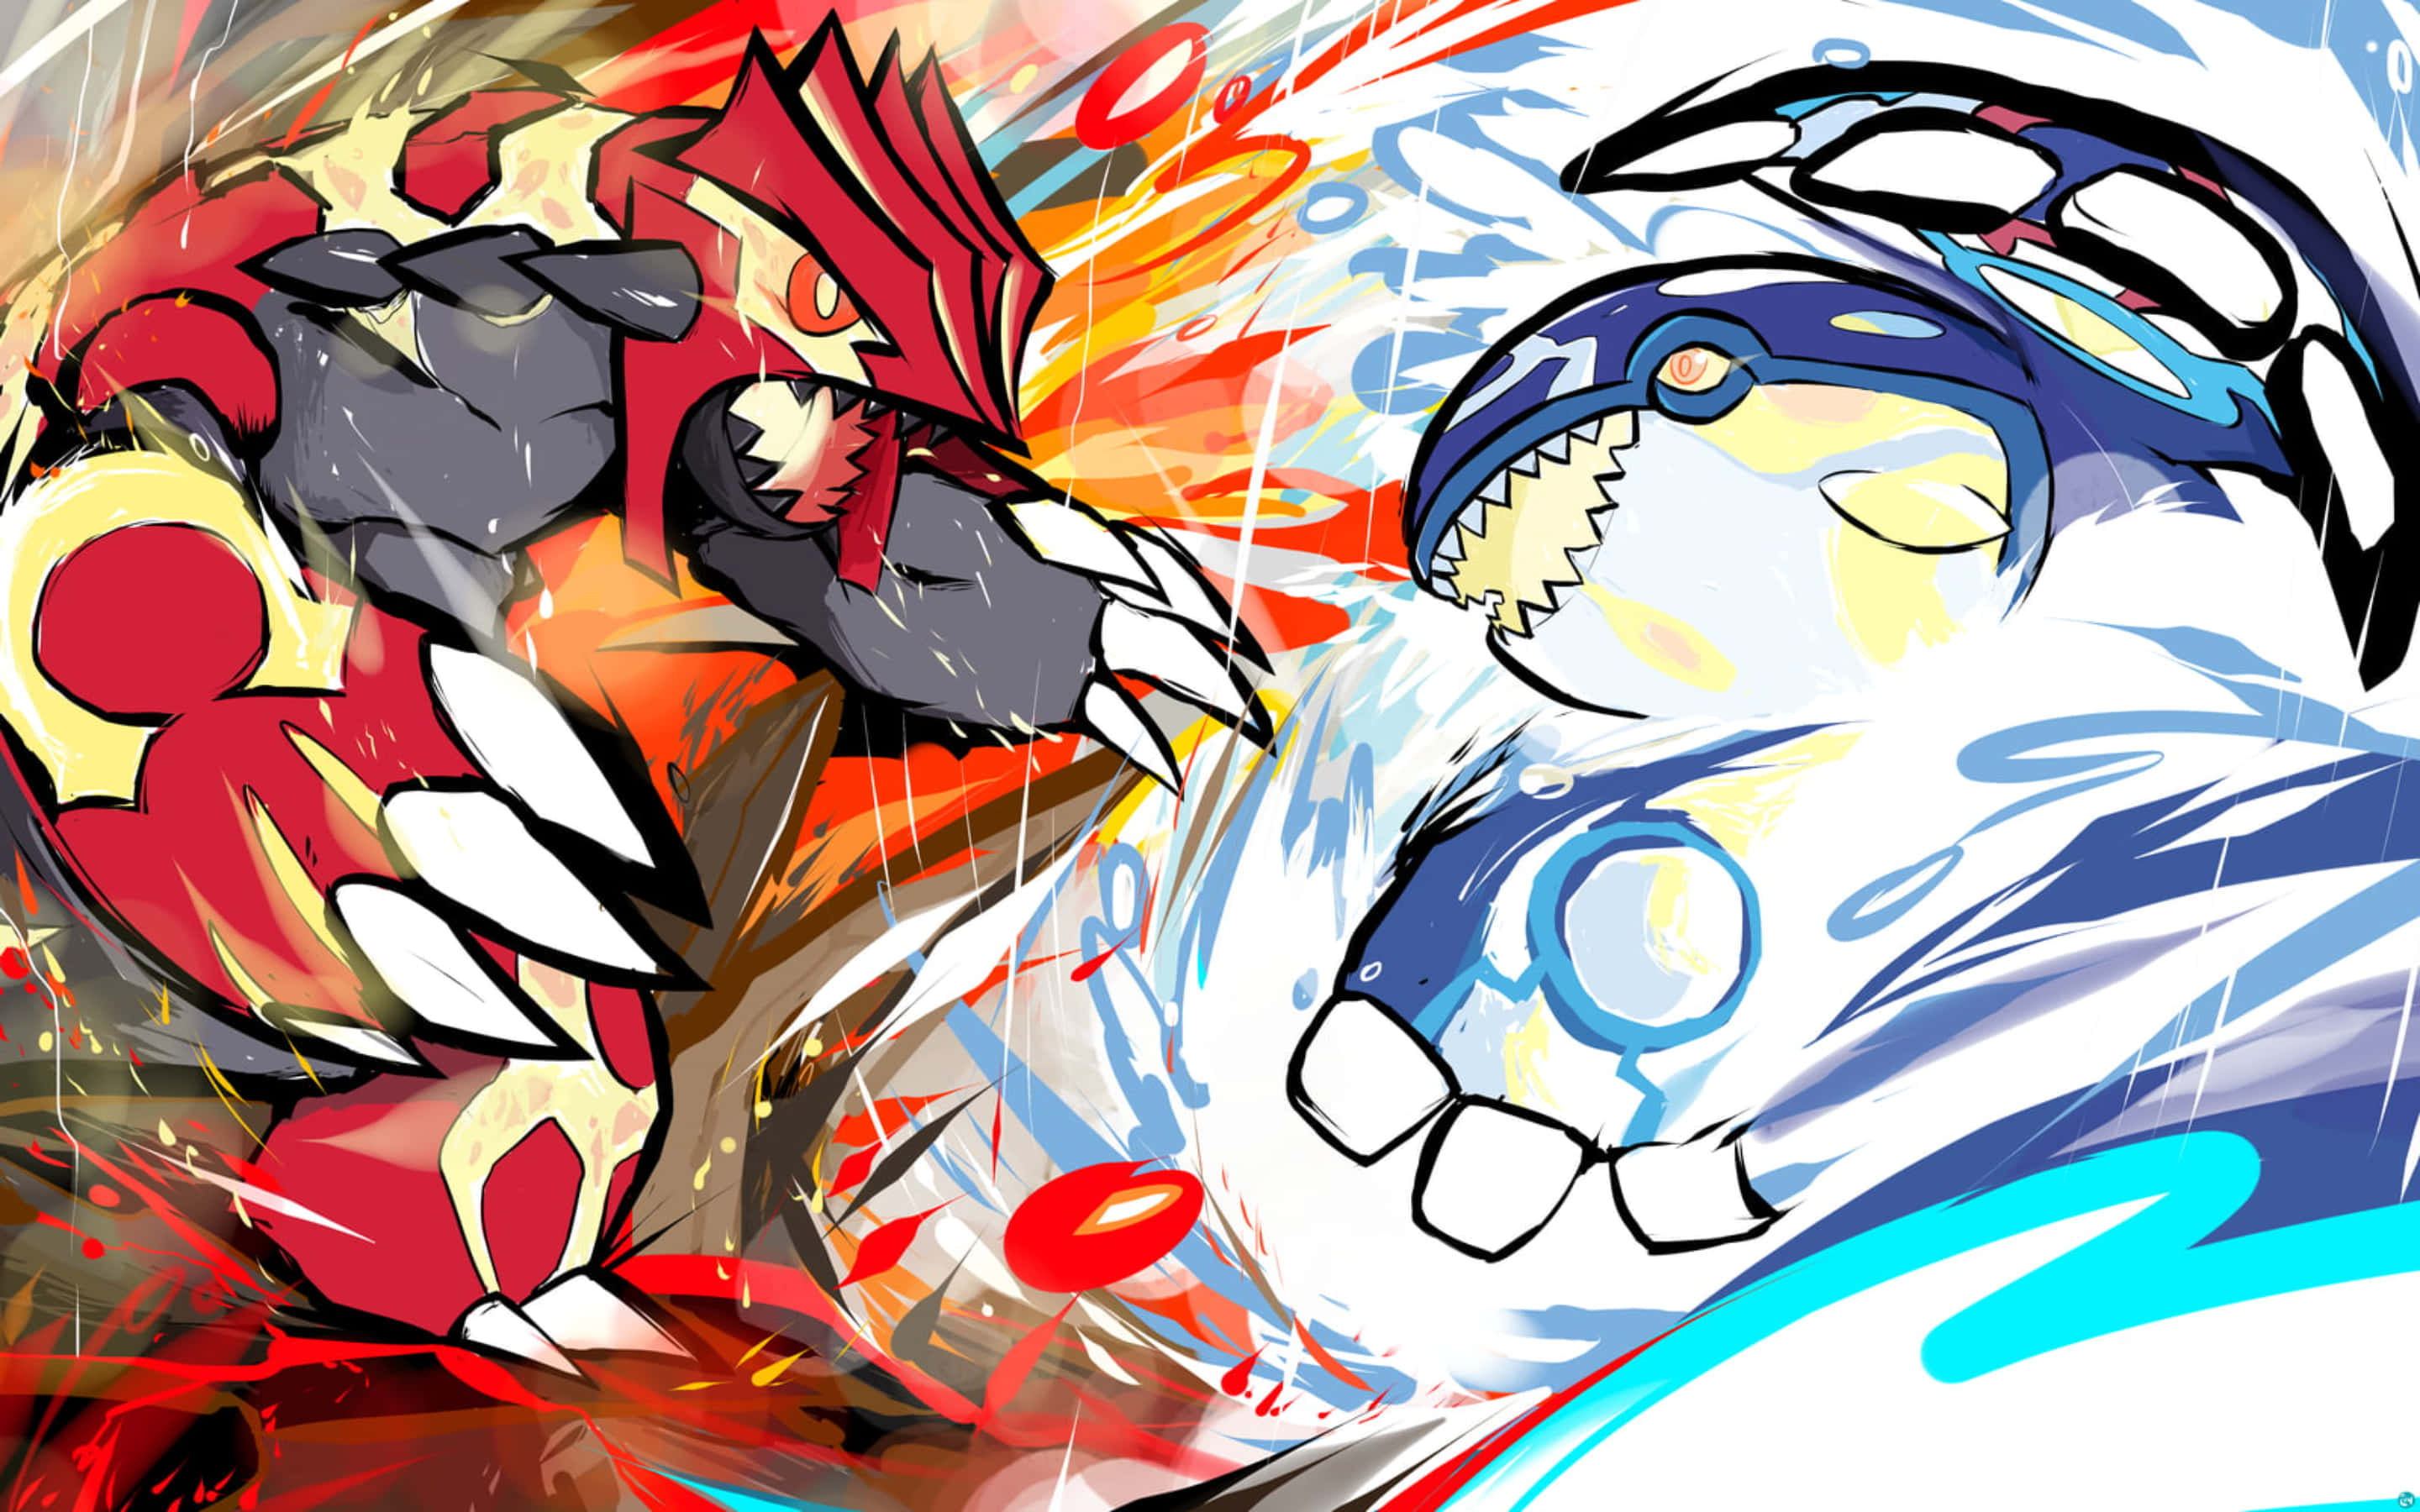 Anime) Ash vs Leon final battle teaser poster : r/pokemon